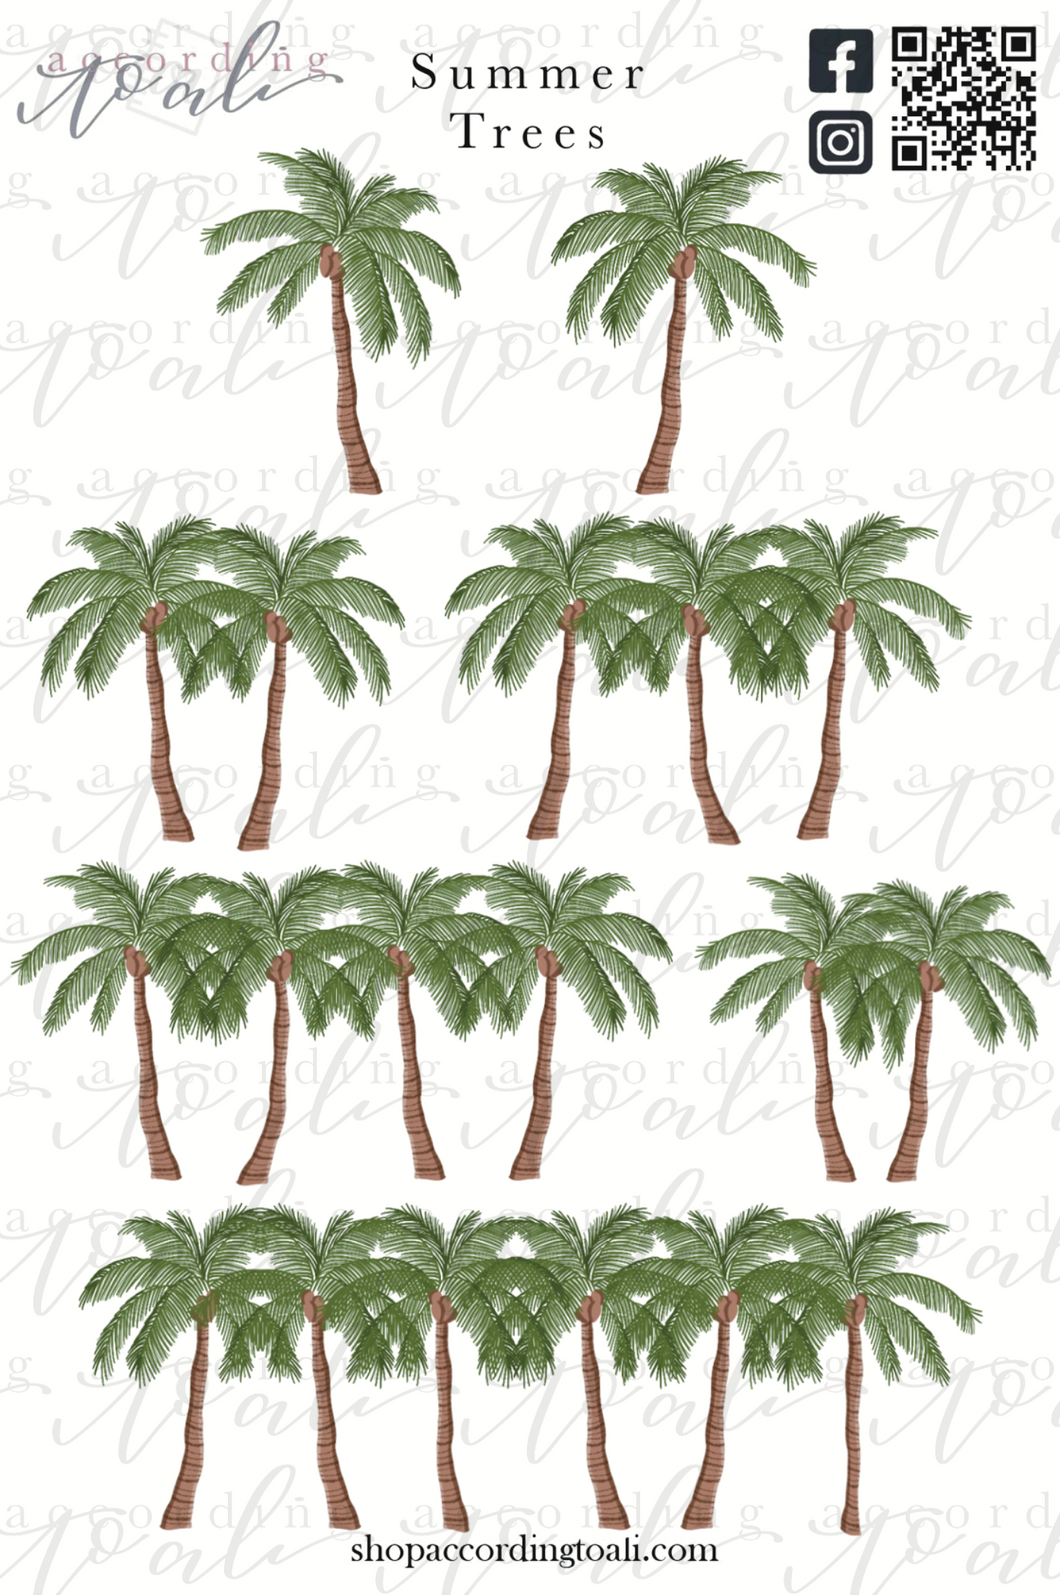 Summer Trees Sticker Sheet